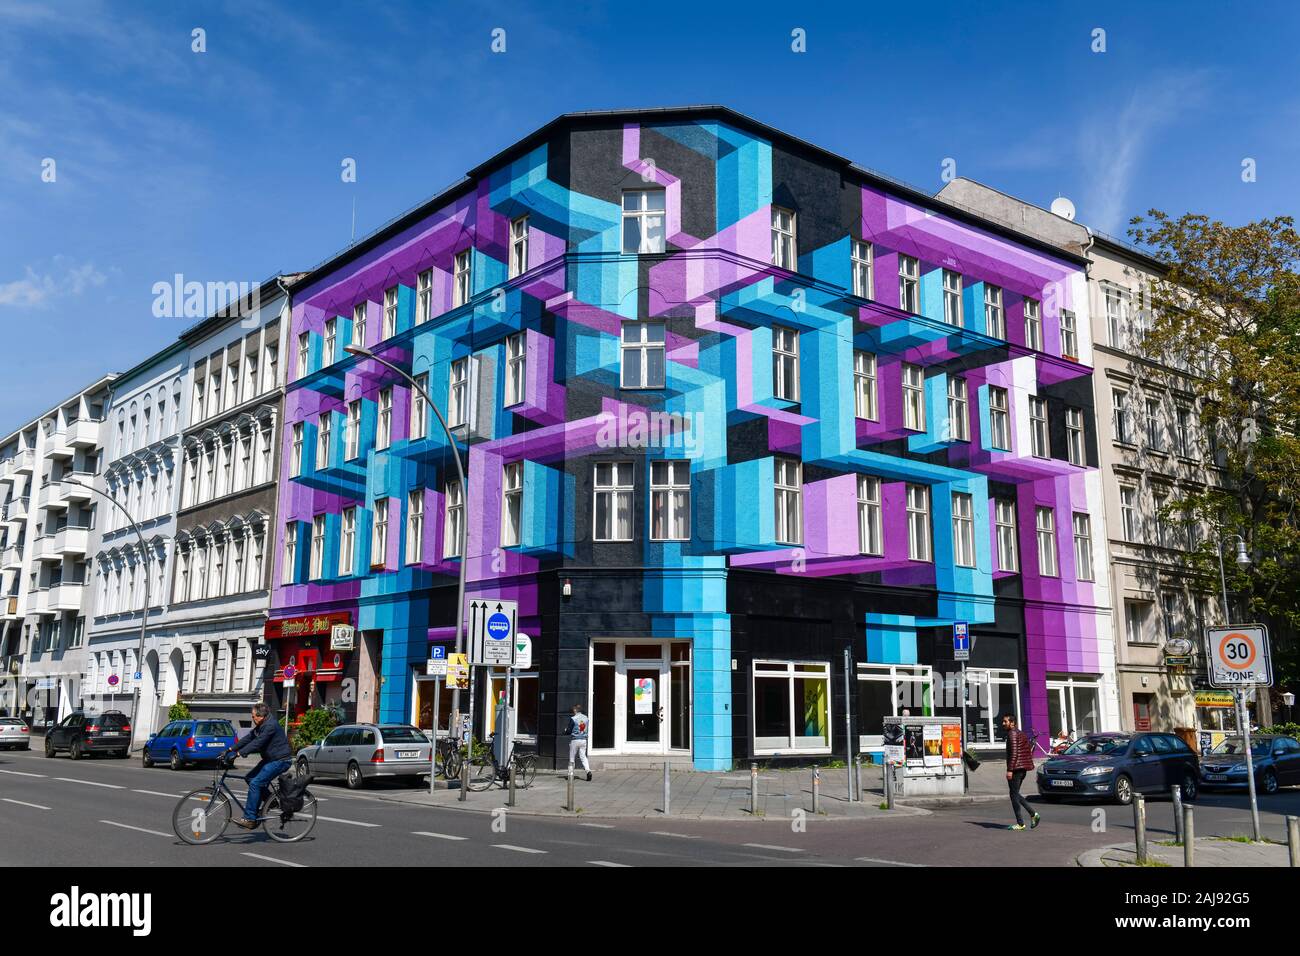 Farbig bemaltes Haus, Bülowstraße, Schoeneberg, Berlin, Deutschland Stock Photo